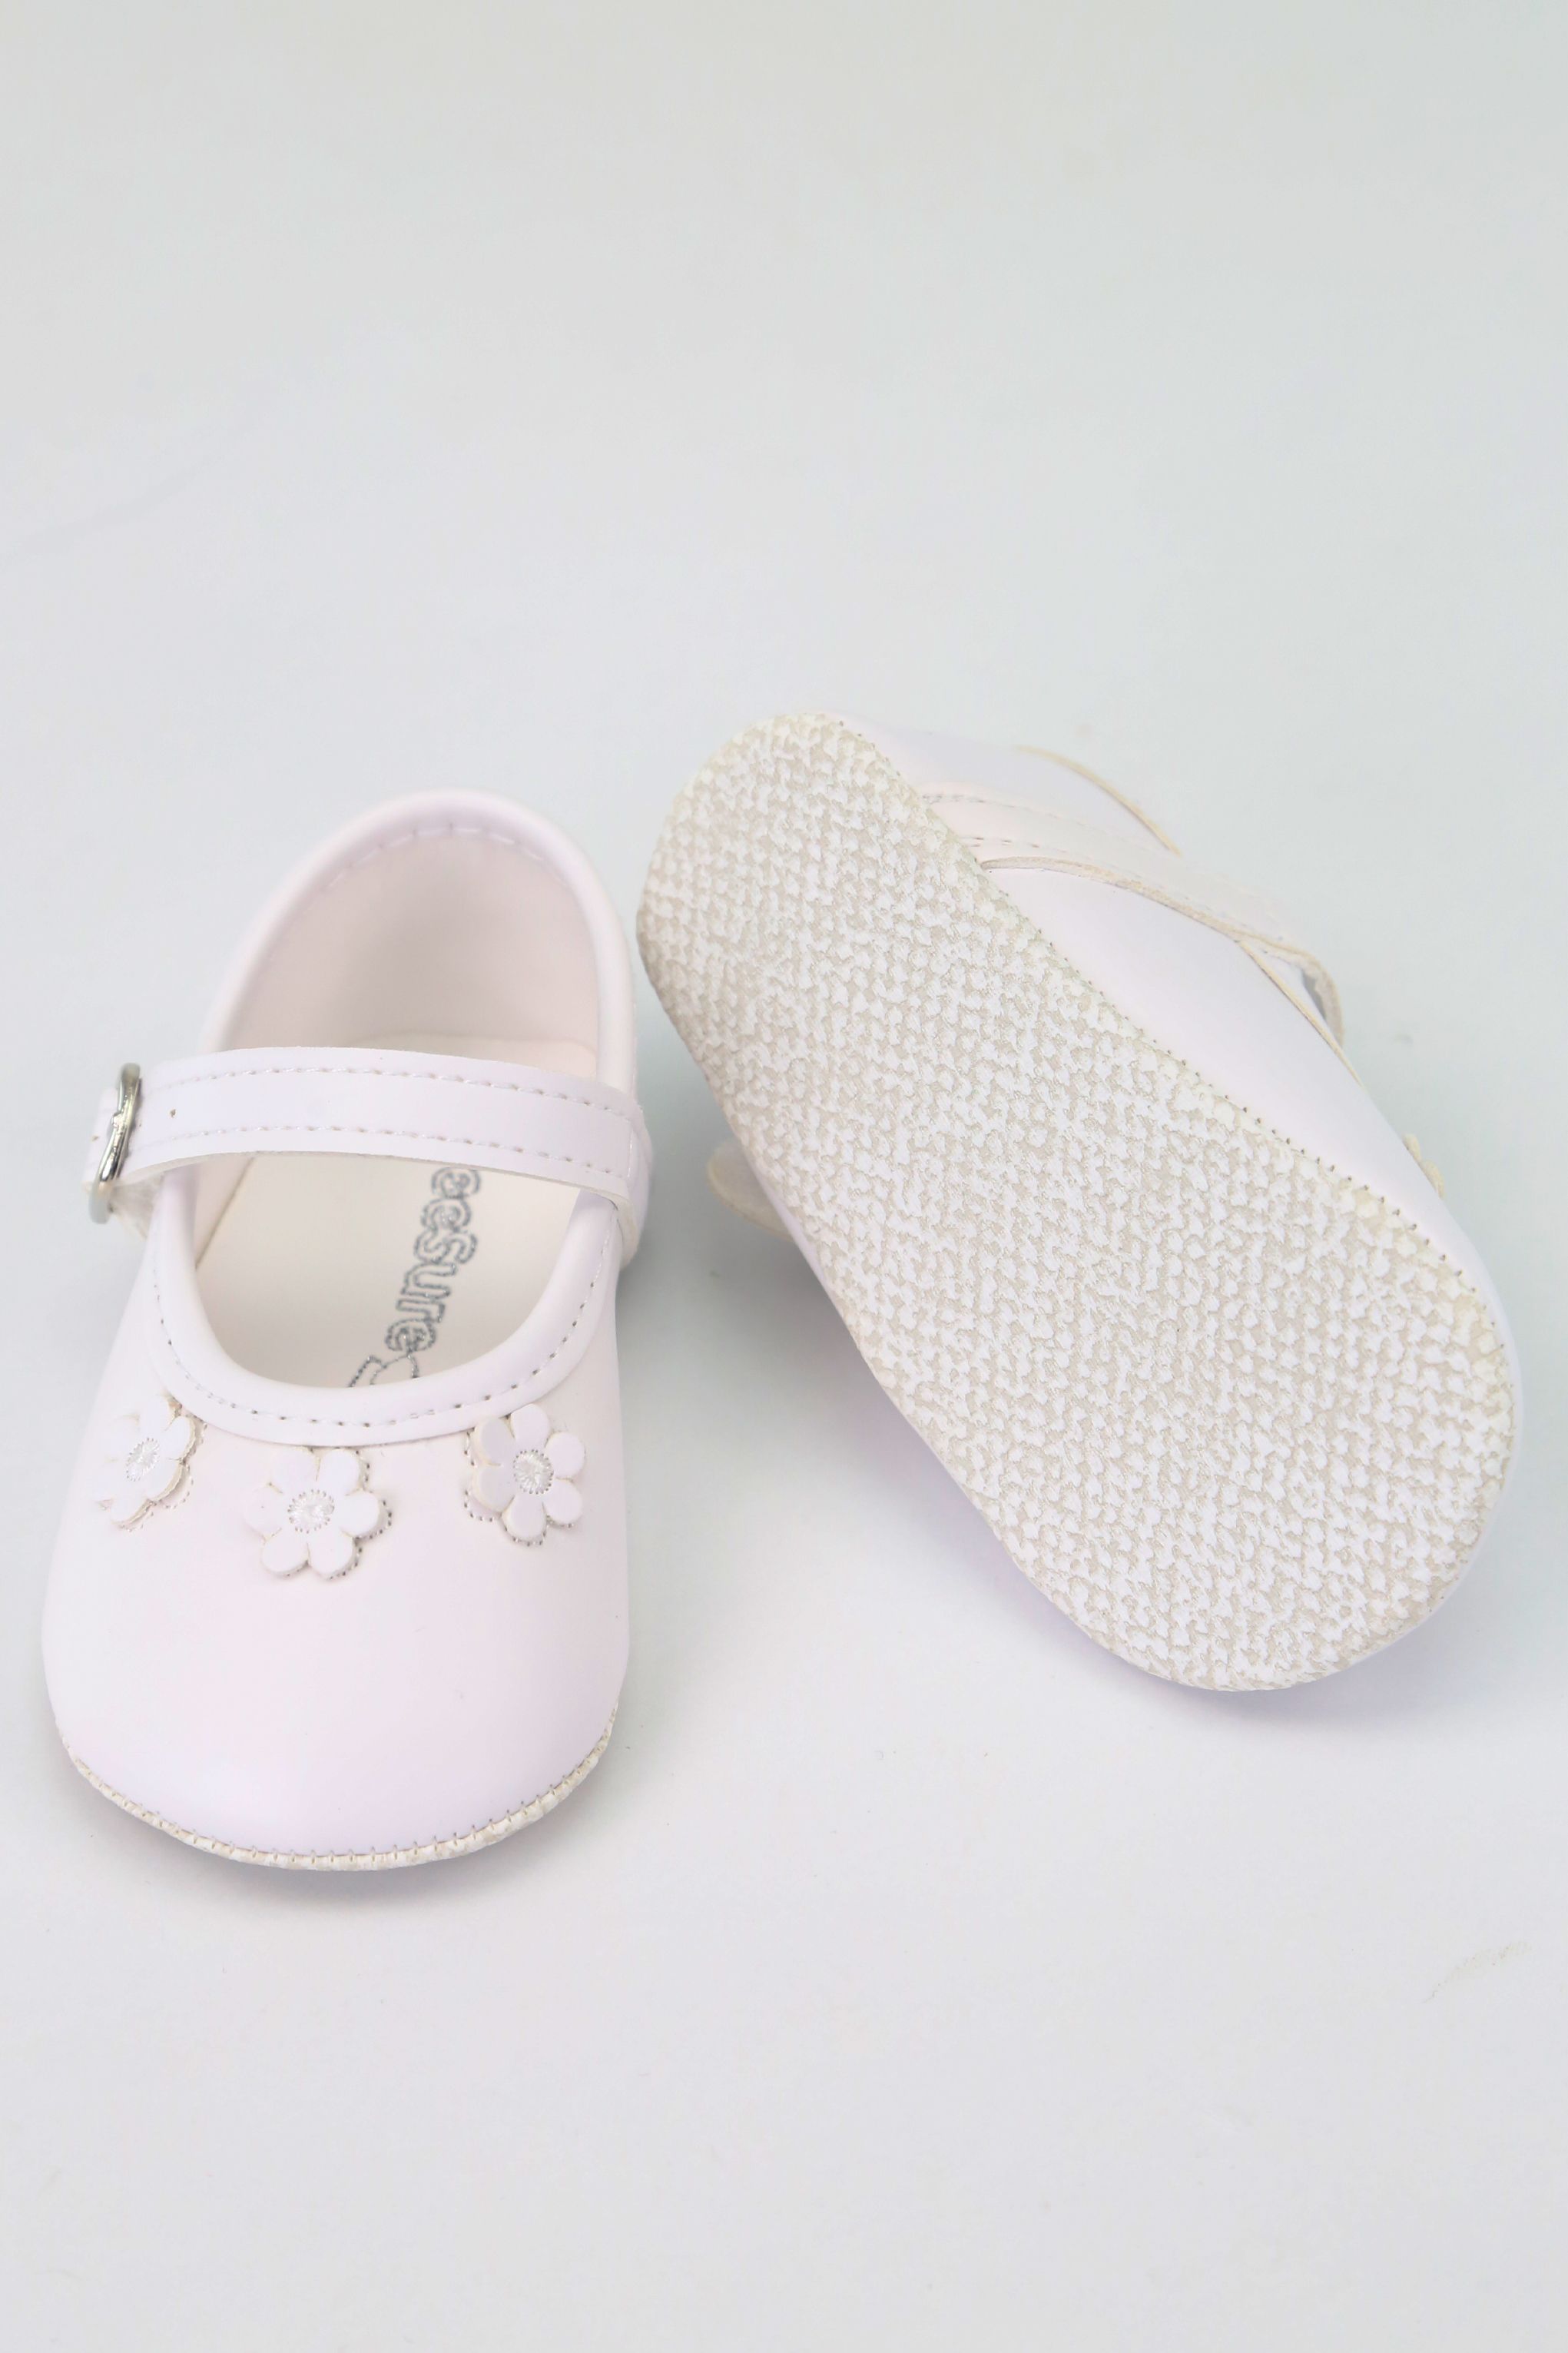 Çiçek Desenli Kız Bebek Yumuşak Taban Ayakkabı, 16-18 Numara - Beyaz